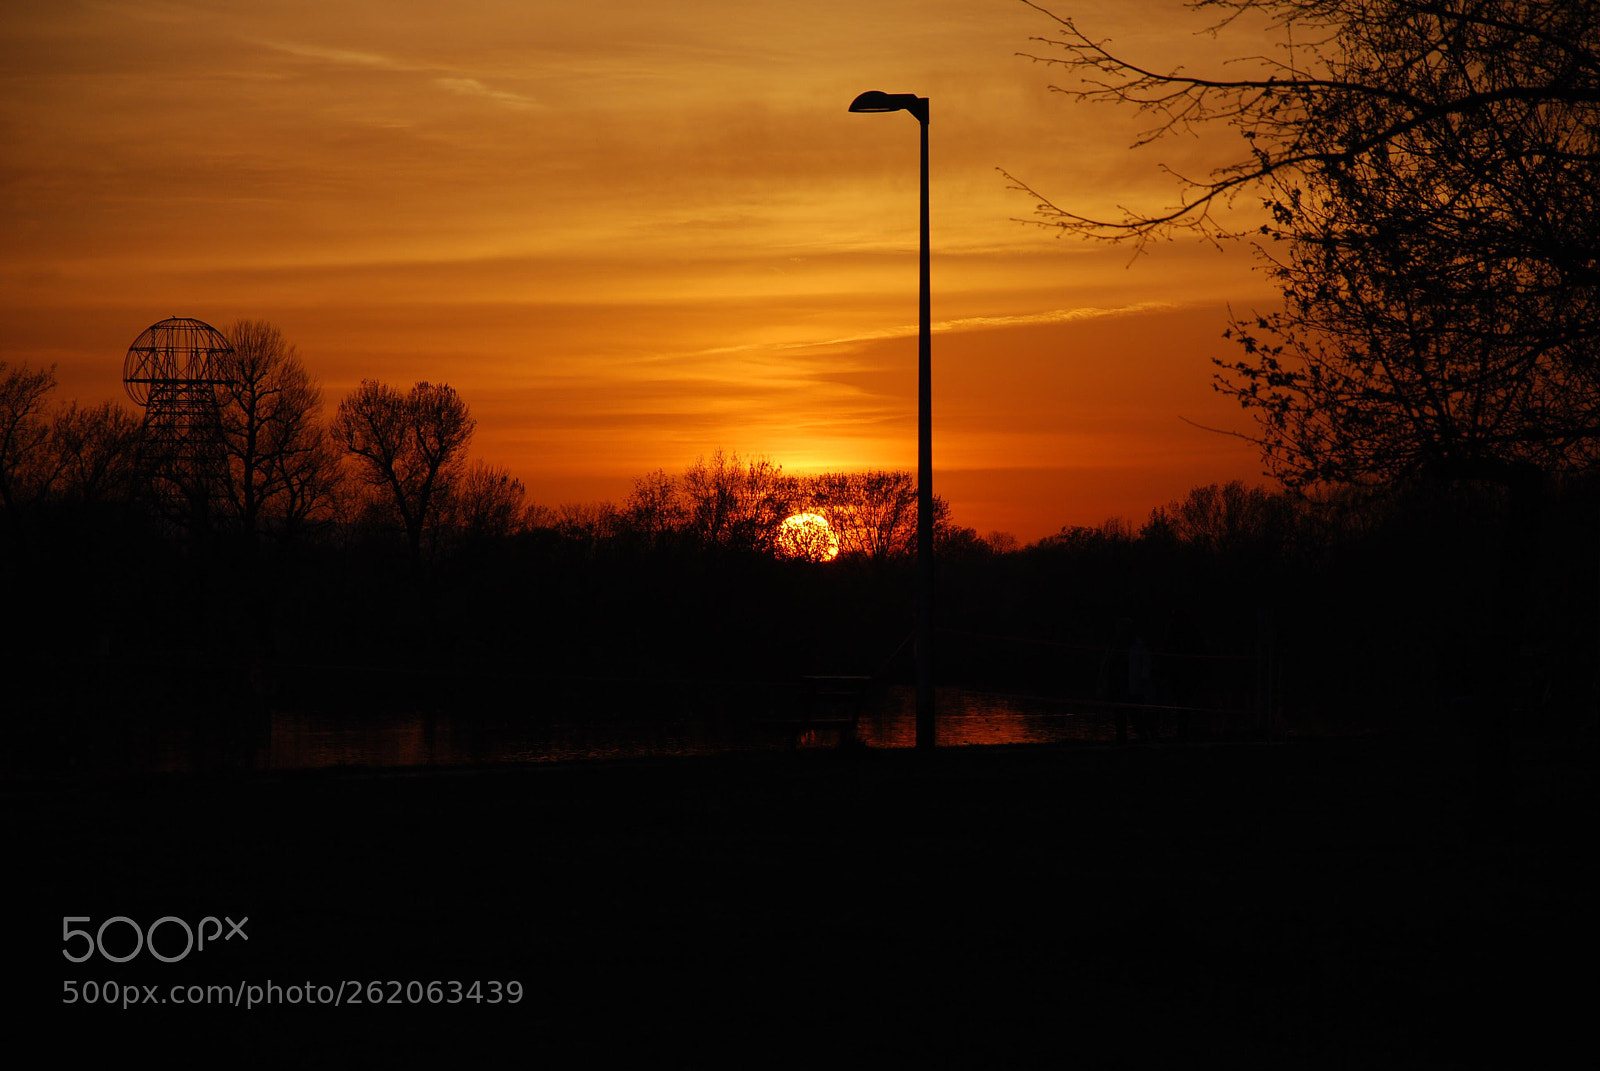 Nikon D60 sample photo. Golden sunset photography